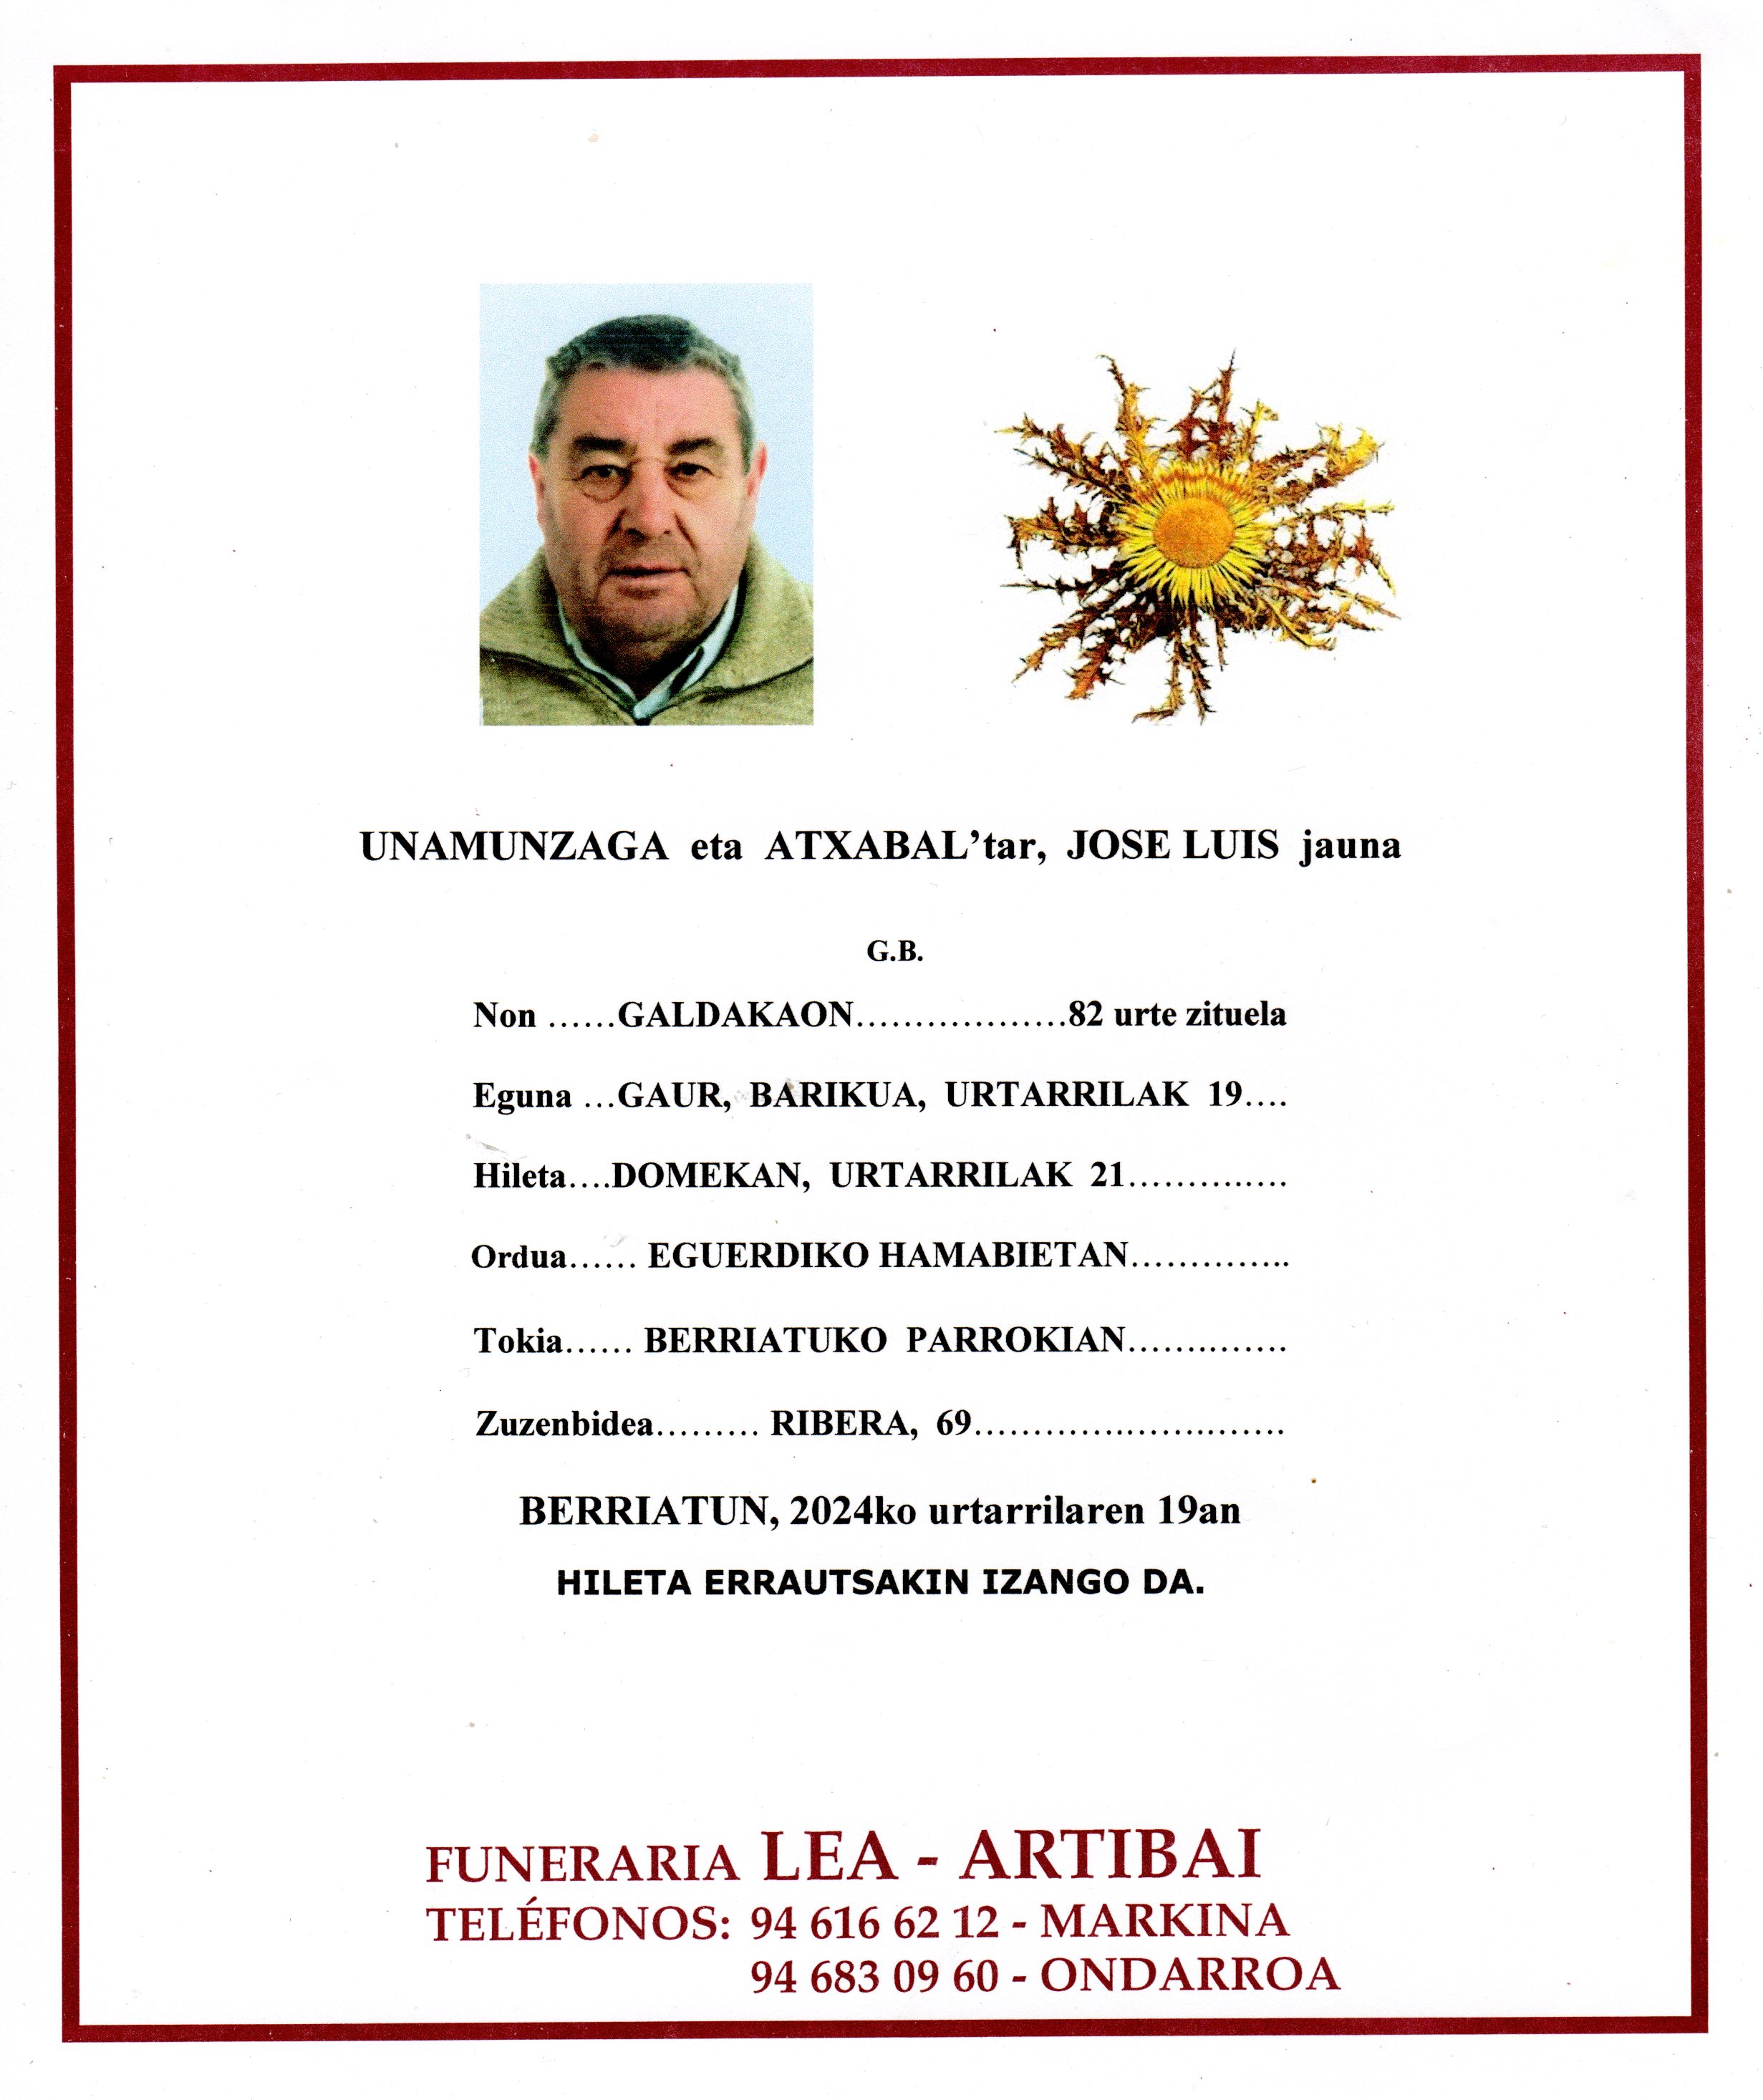 Jose Luis Unamunzaga Atxabal